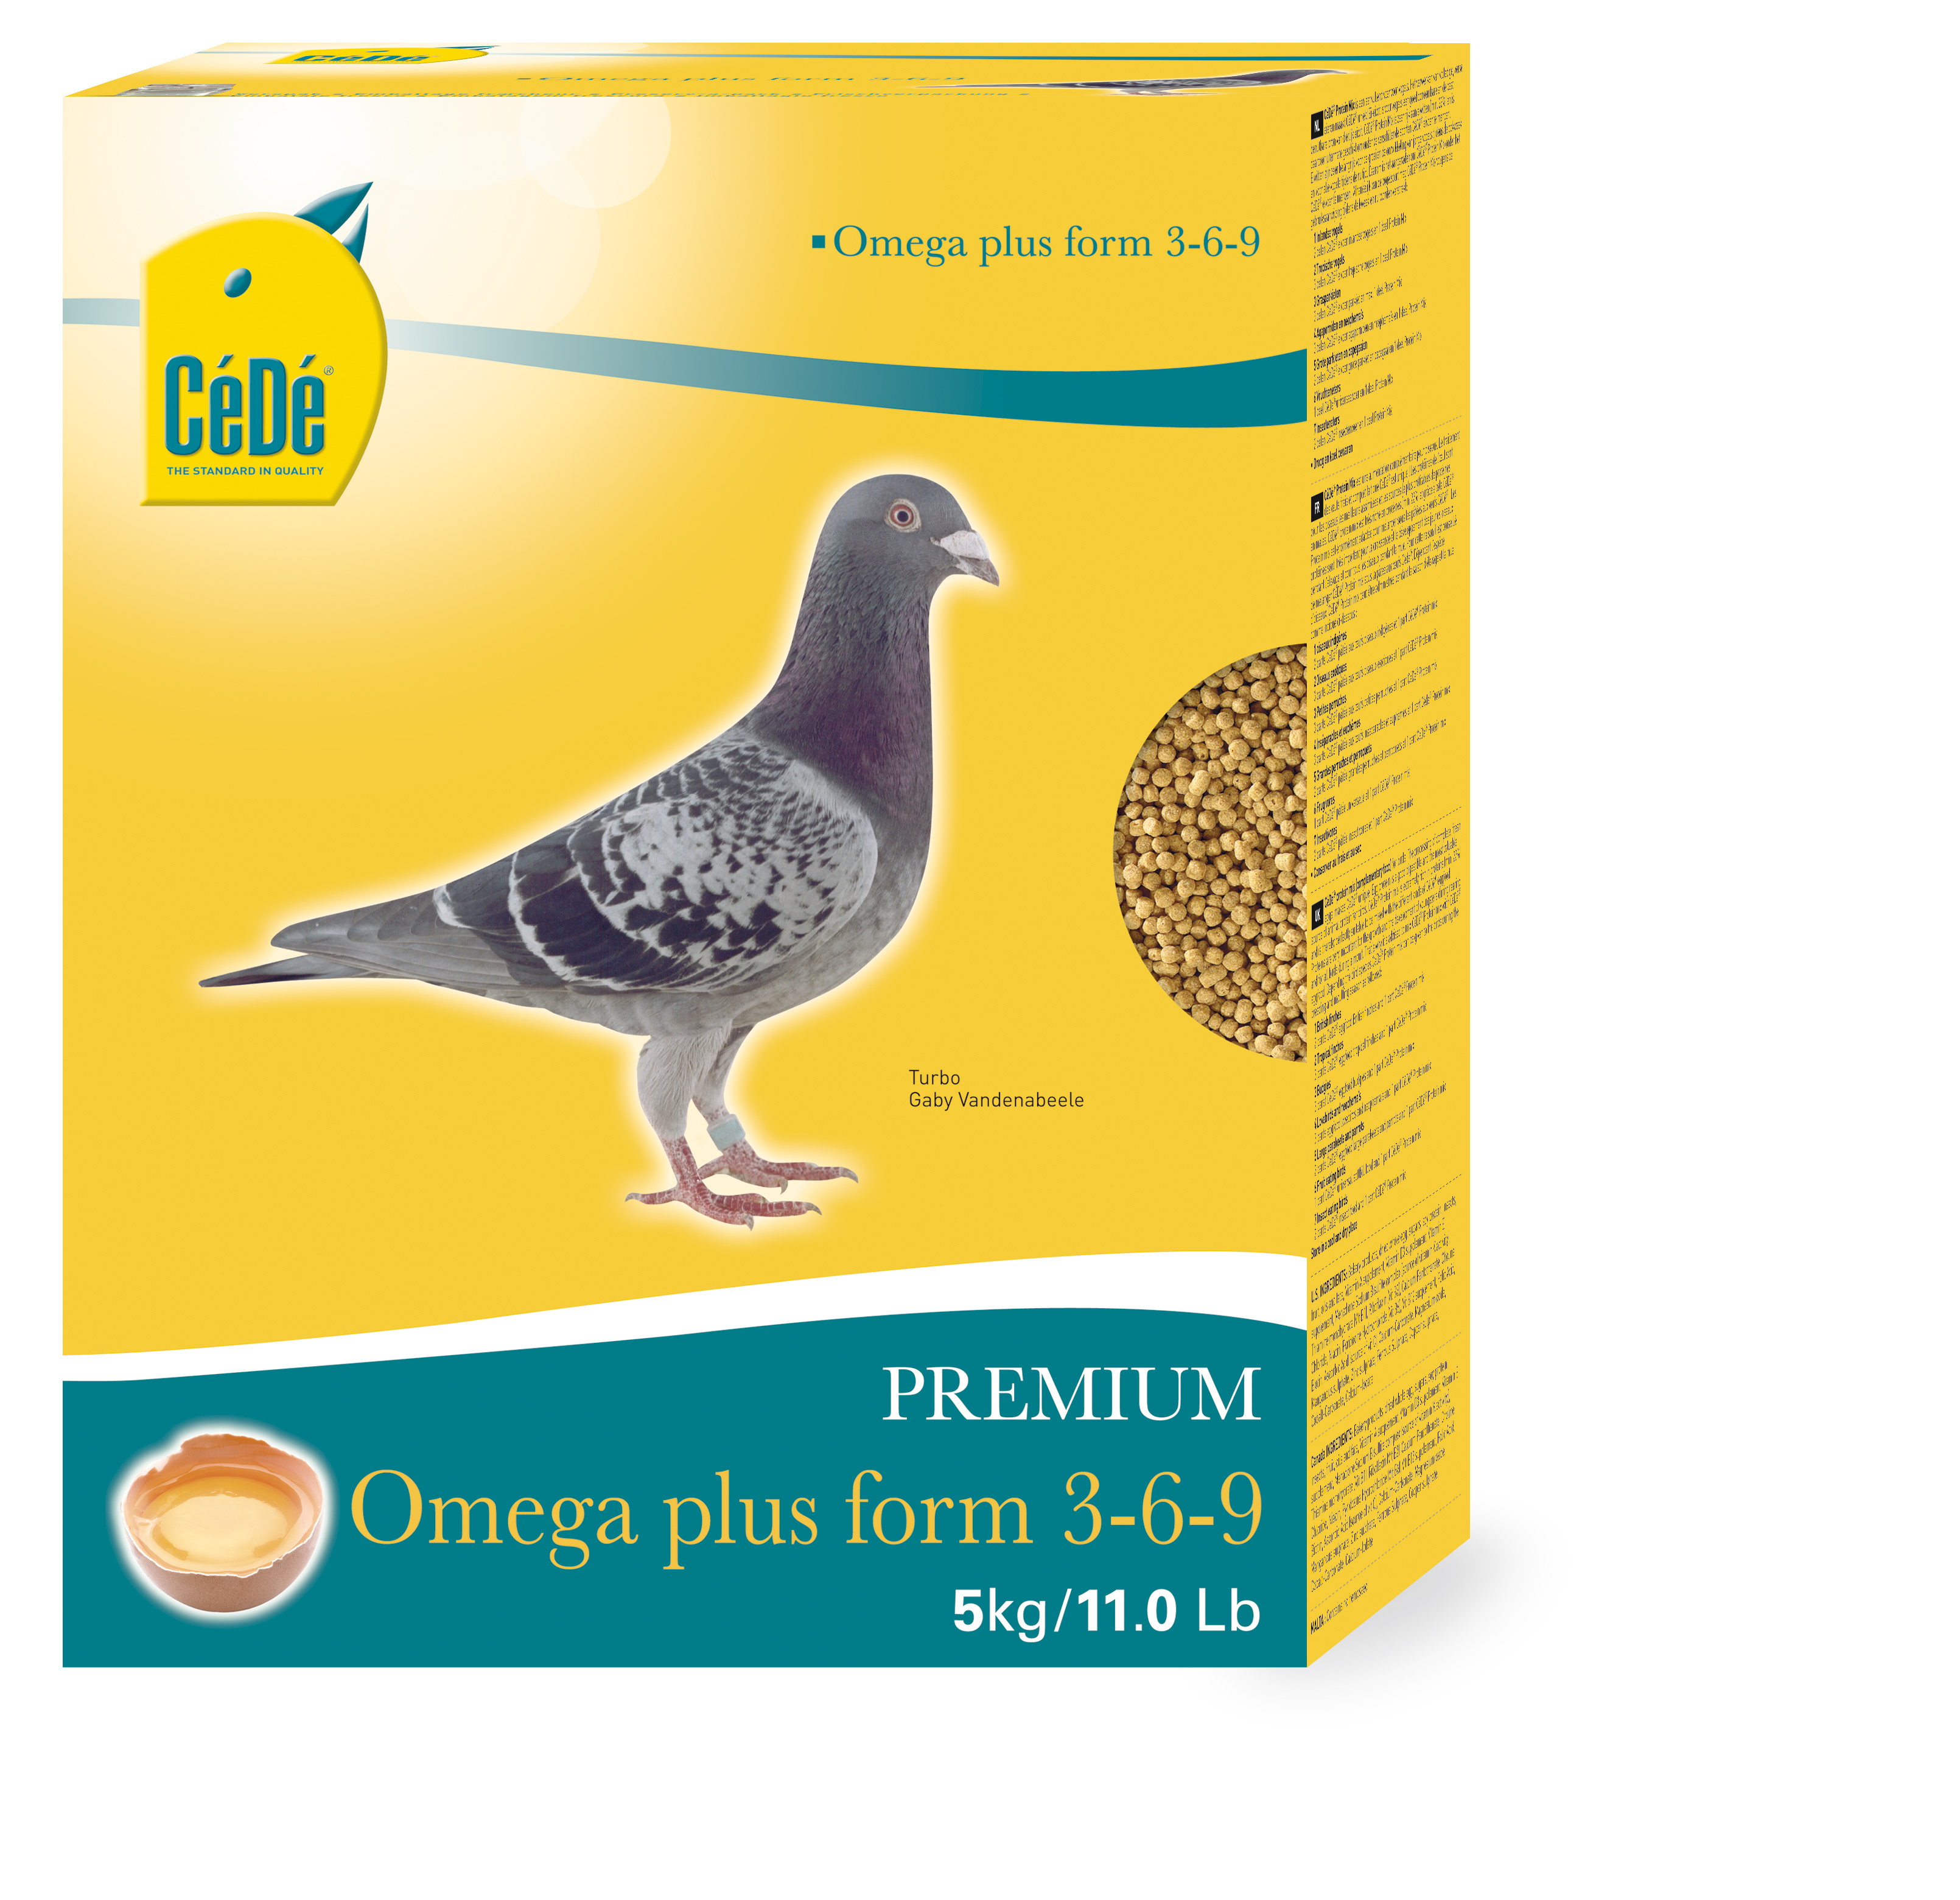 Cédé omega form 3-6-9 - <Product shot>